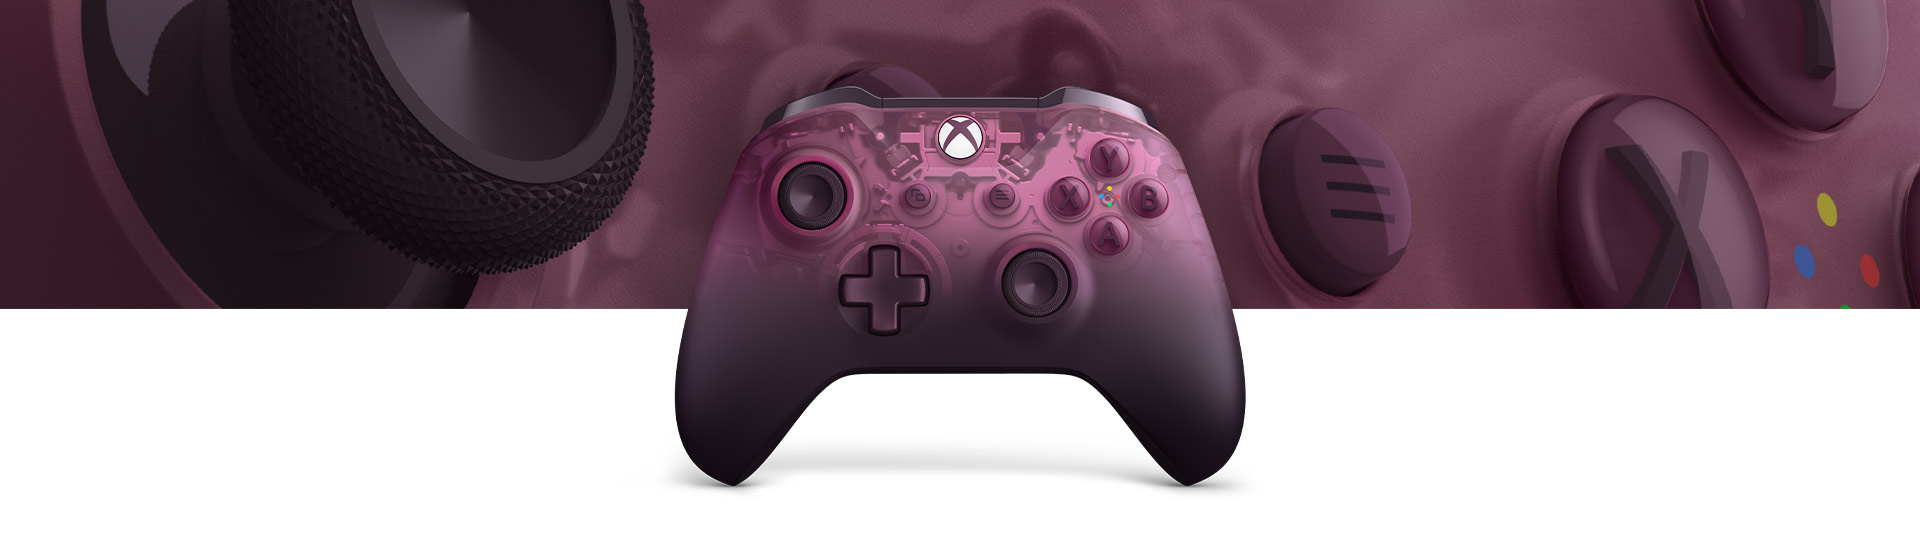 Control inalámbrico Xbox - Edición especial Magenta fantasma con un primer plano de la textura de la superficie